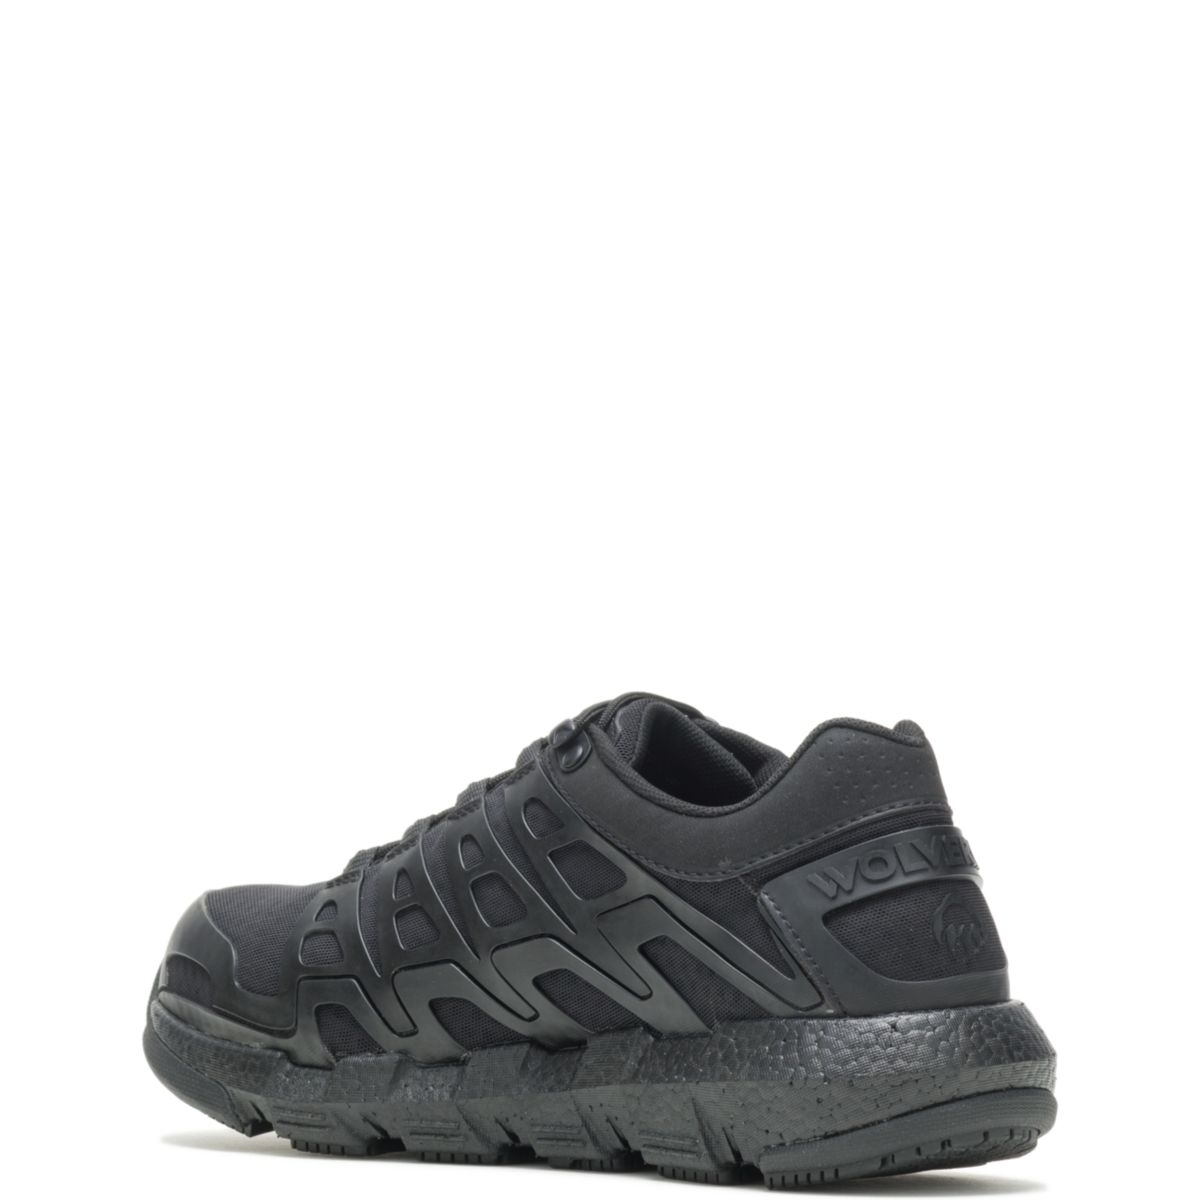 WOLVERINE Men's Rev Vent UltraSpringâ¢ DuraShocksÂ® CarbonMAXÂ® Composite Toe Work Shoe Black - W211017 BLACK - BLACK, 11 X-Wide